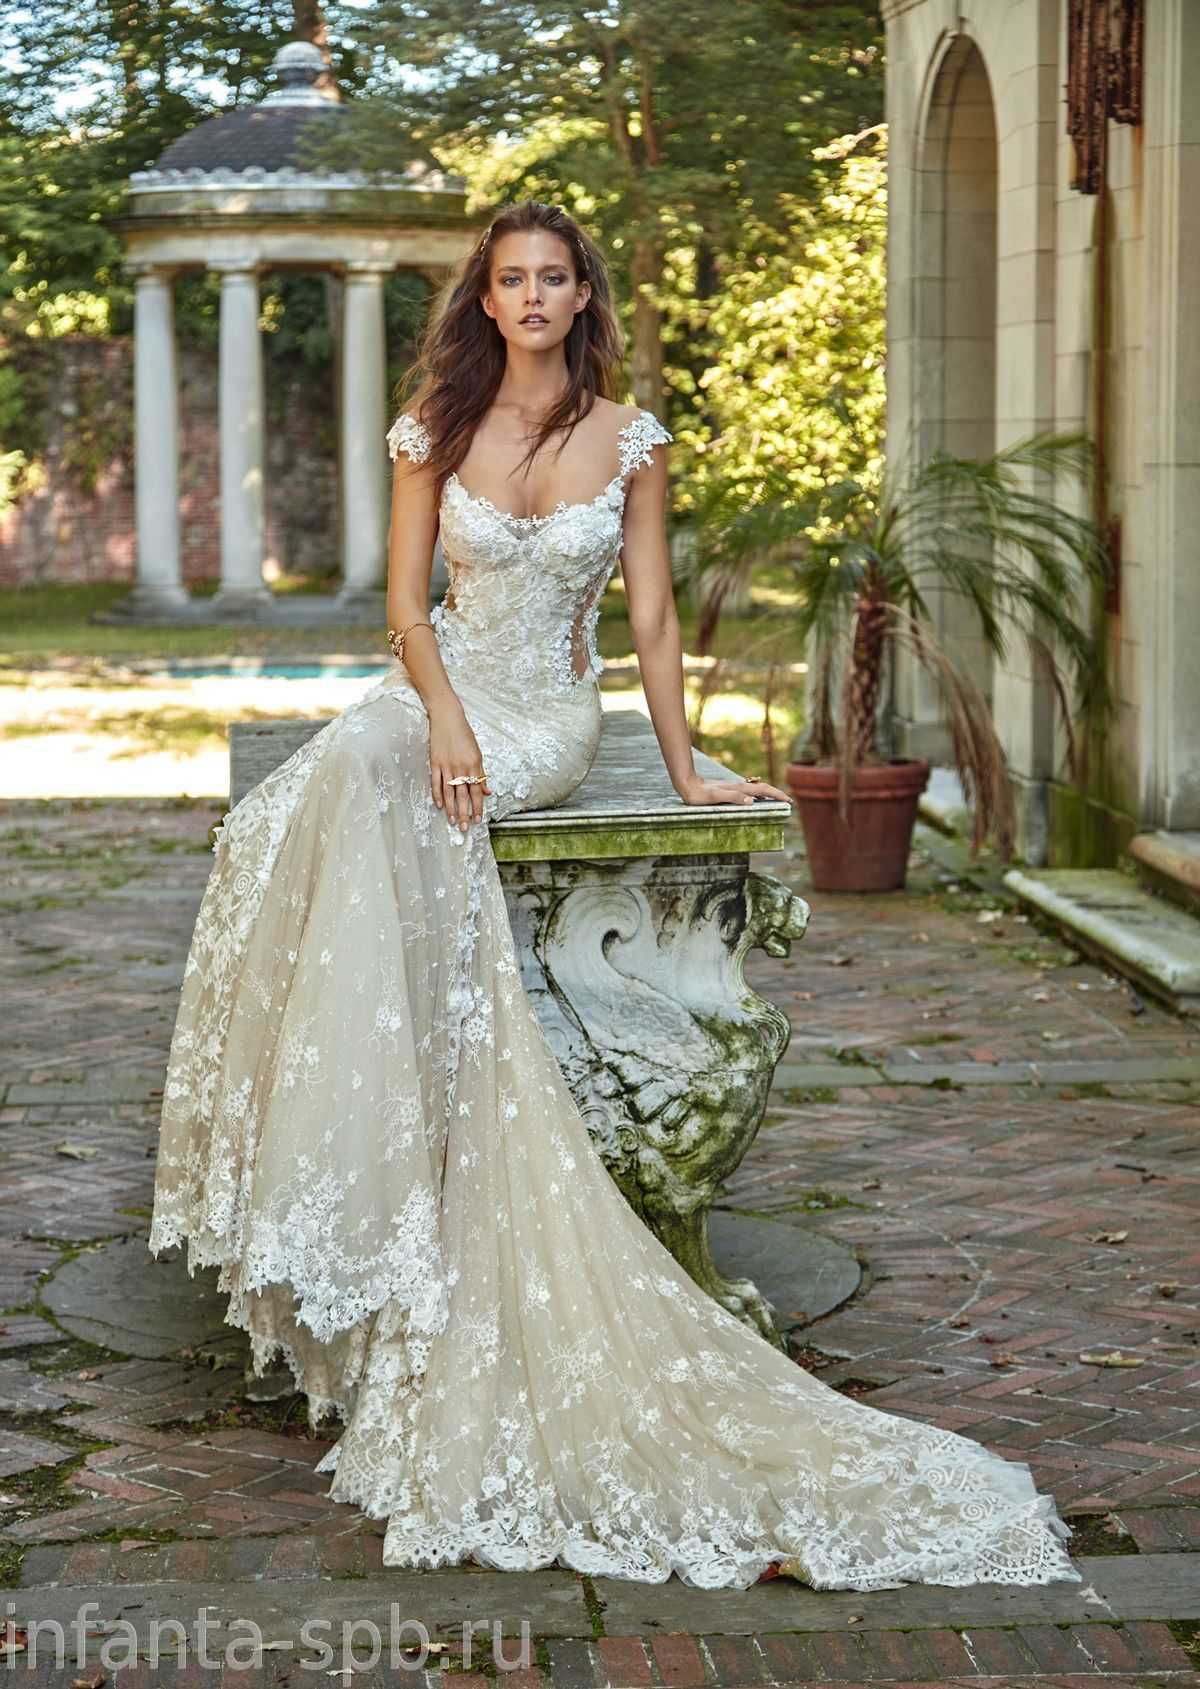 Свадебные платья в стиле винтаж 2021 года модные модели и фасоны с фото